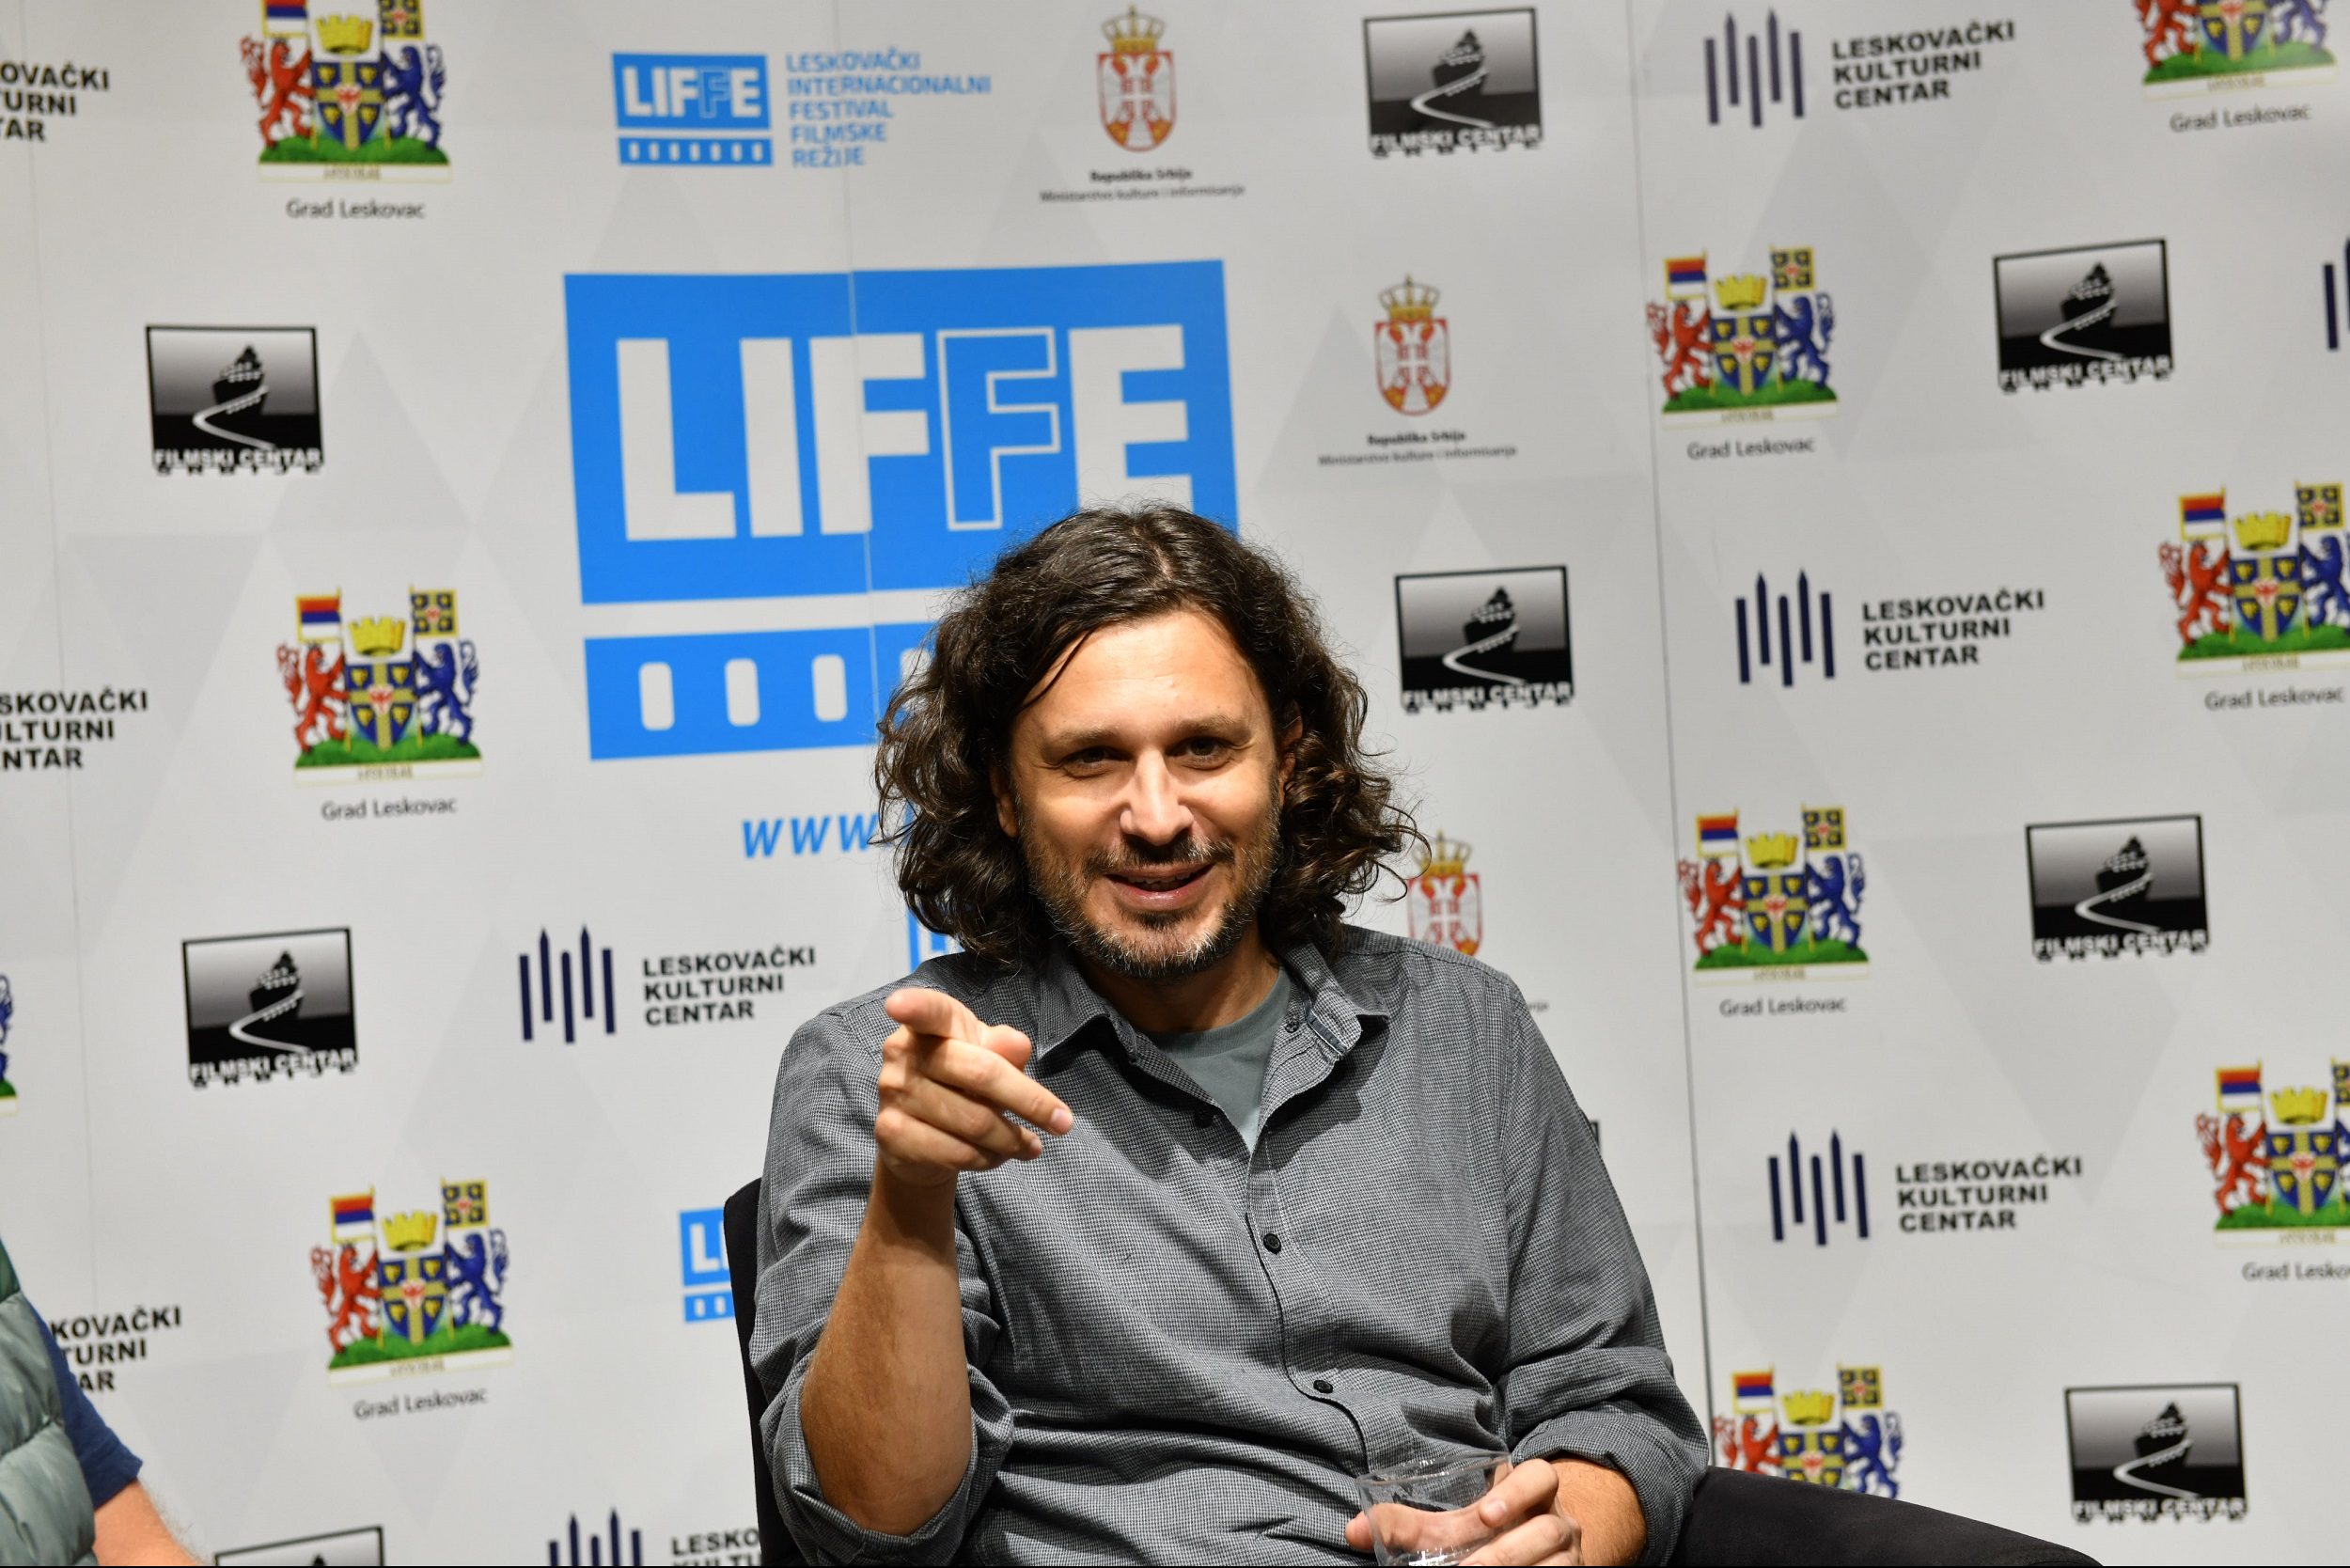 Стефан Арсенијевић: LIFFE је мето где можете срести колеге из региона